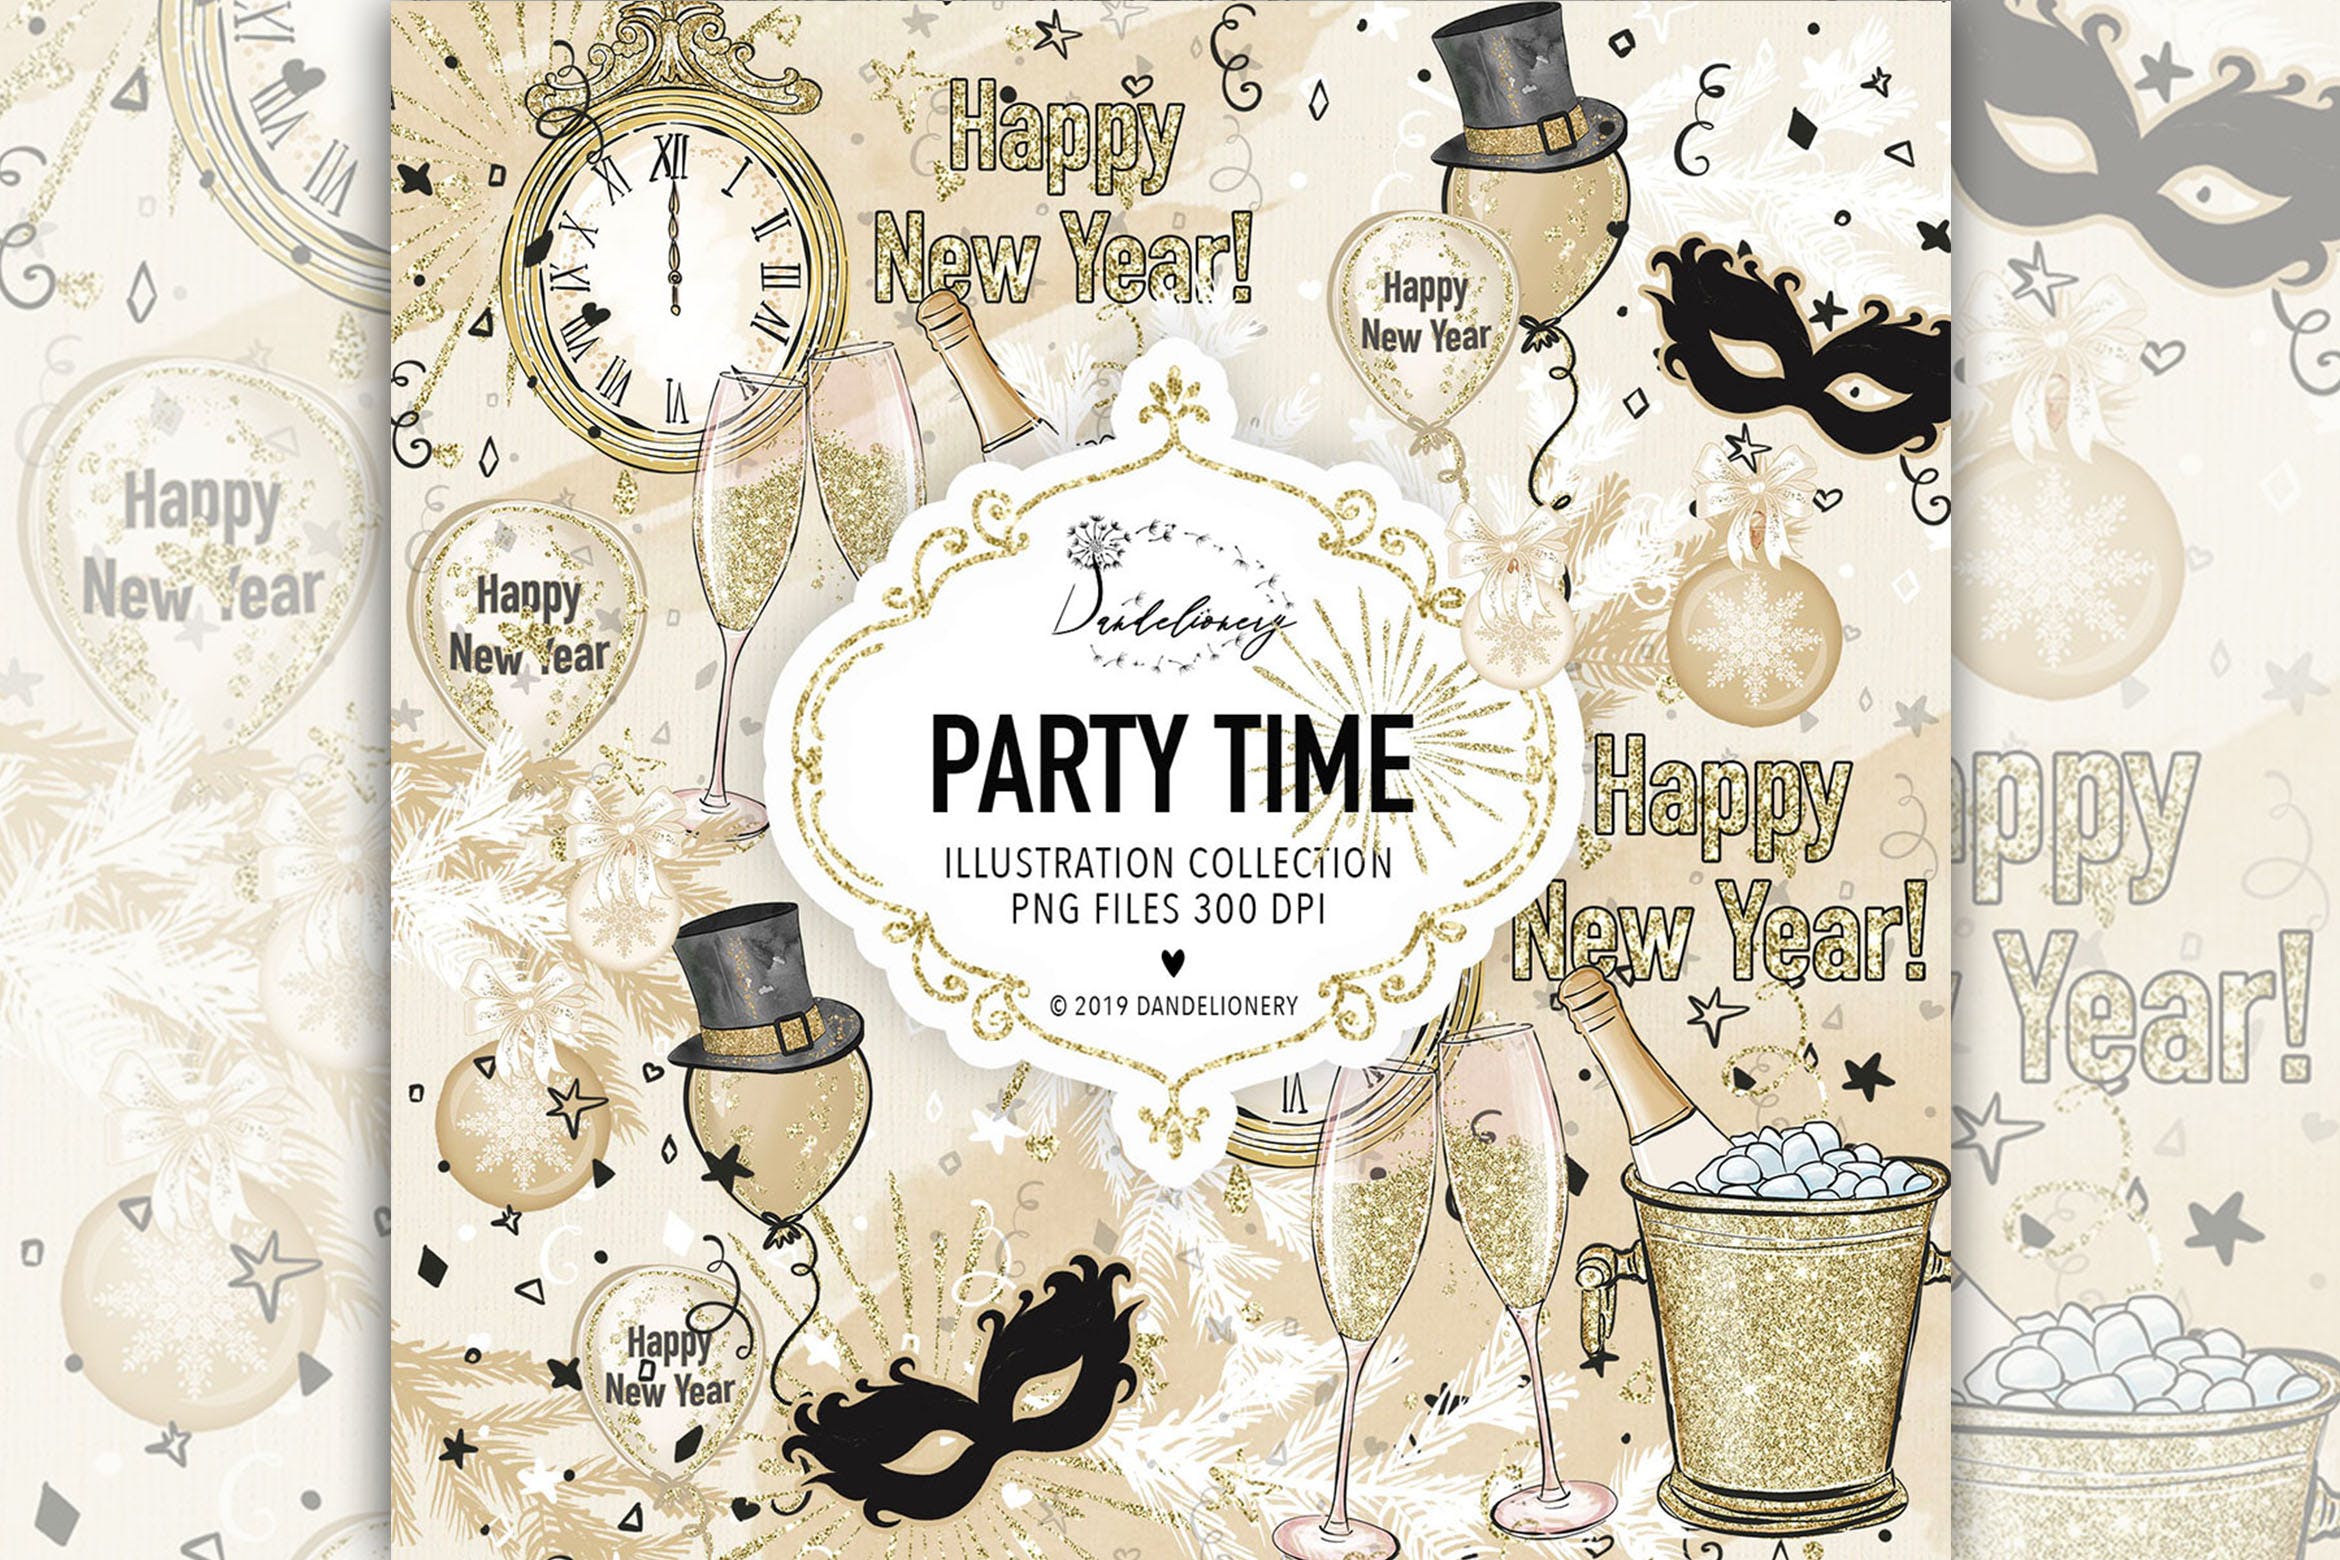 派对时光主题水彩手绘图案大洋岛精选设计素材 Party Time design插图